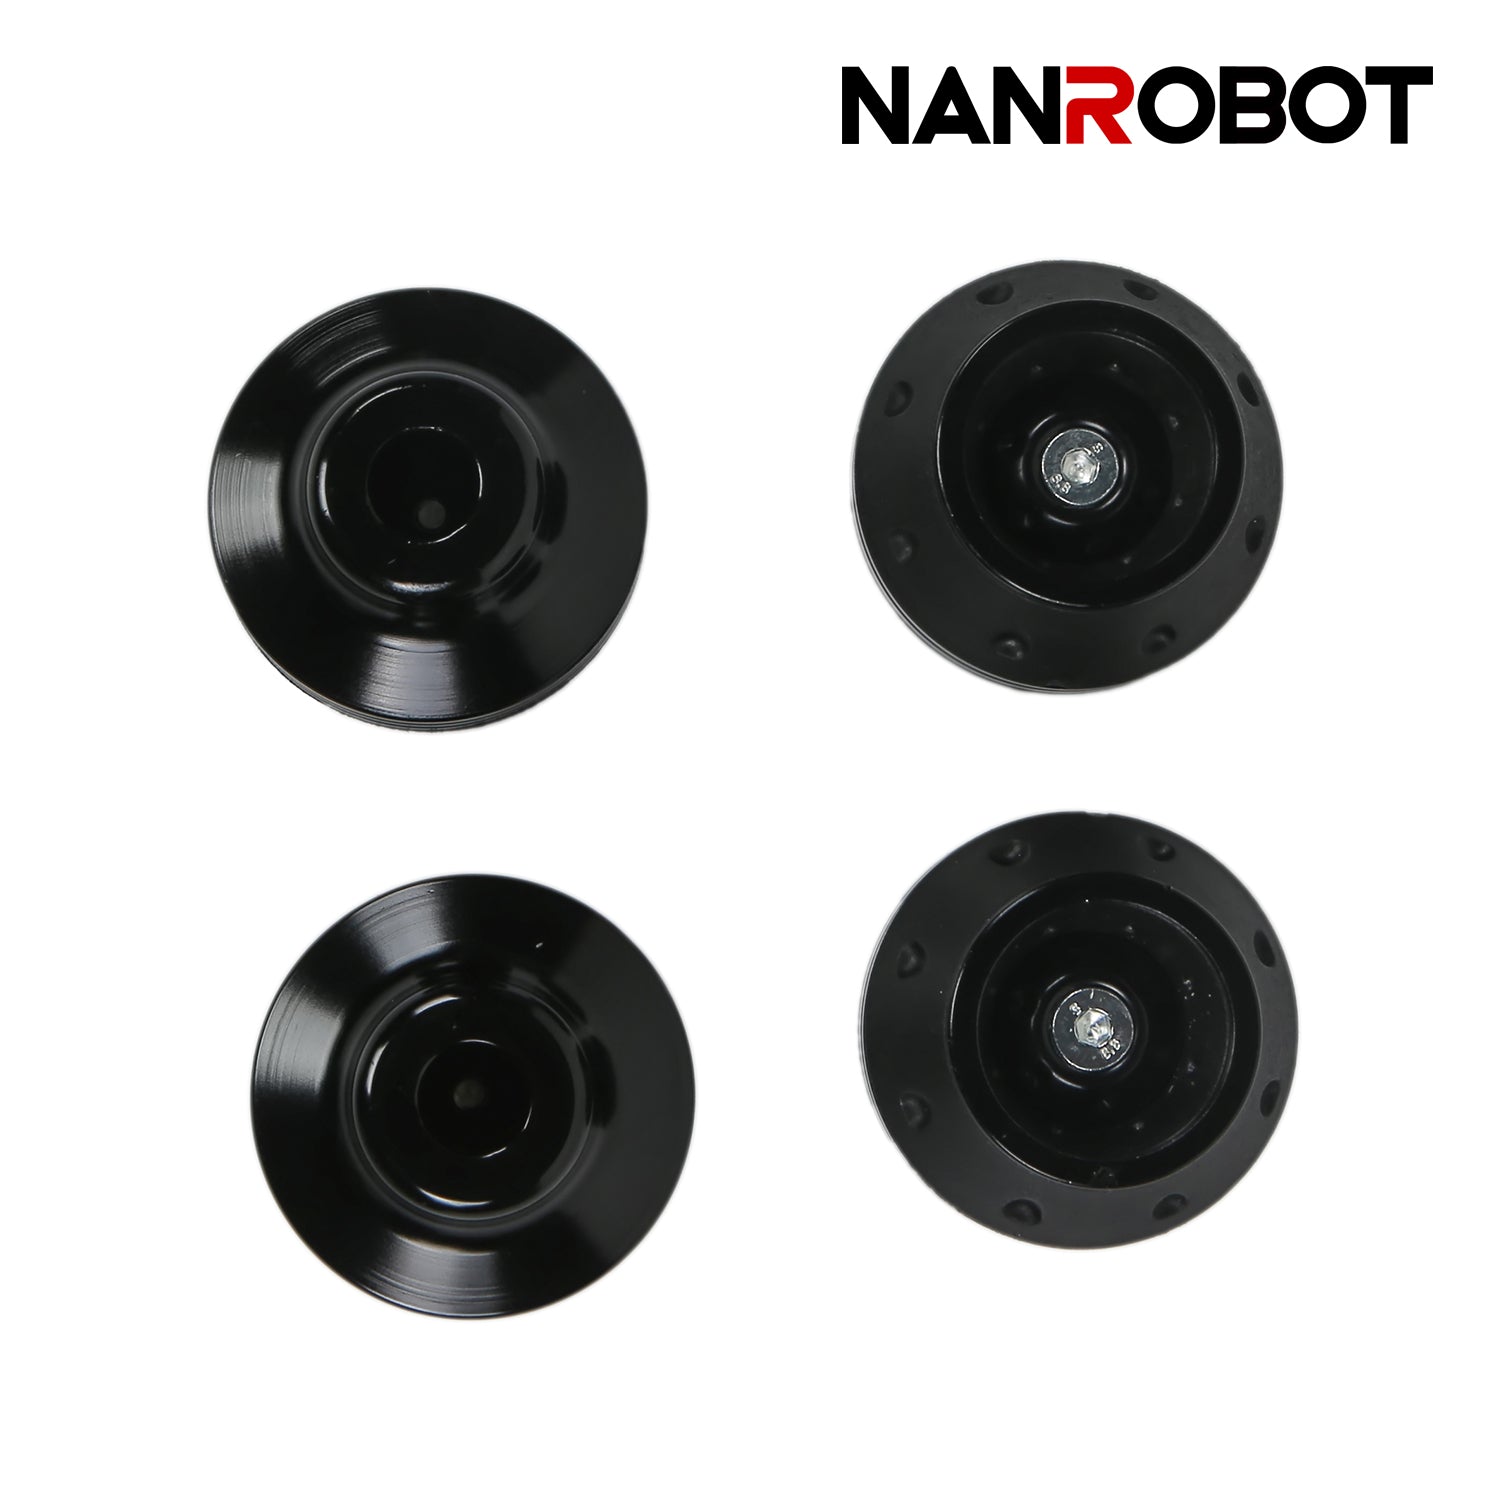 Anti-Collision ball - NANROBOT